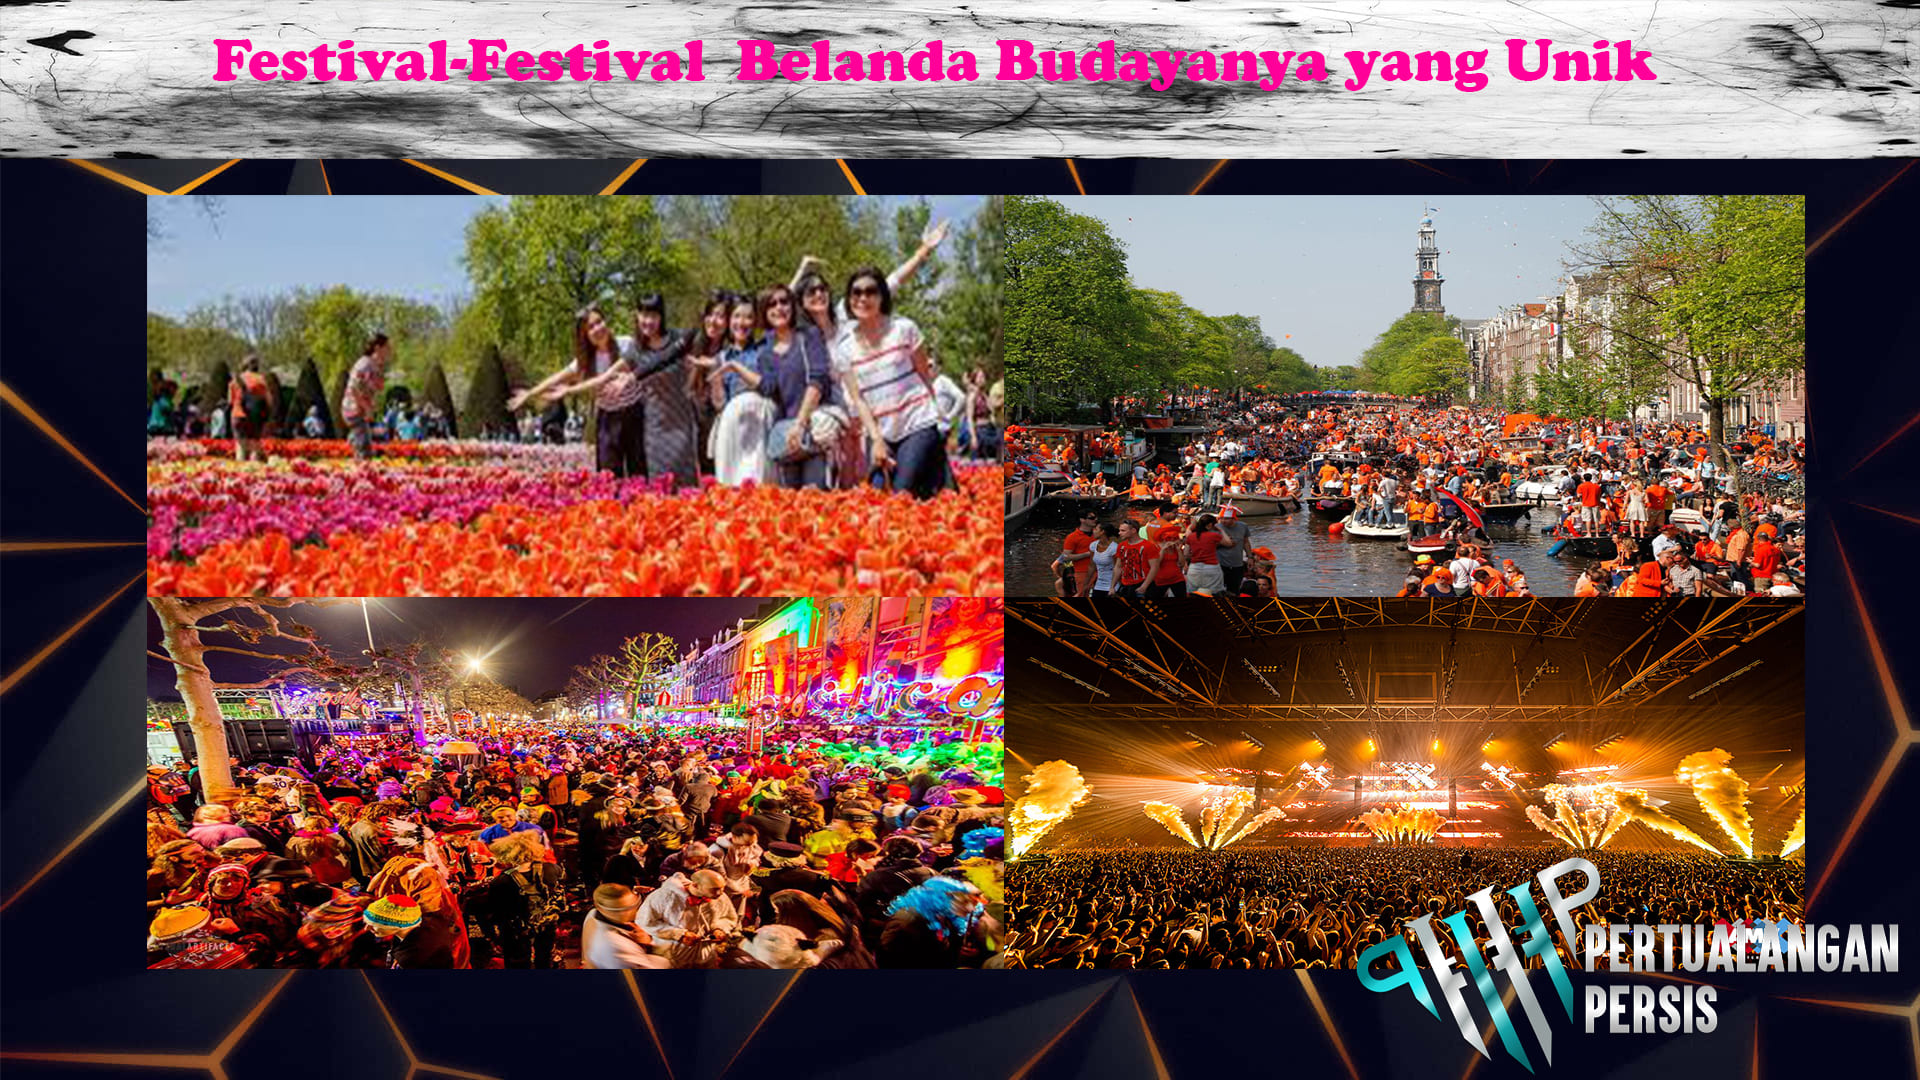 Festival-Festival  Belanda Budayanya yang Unik